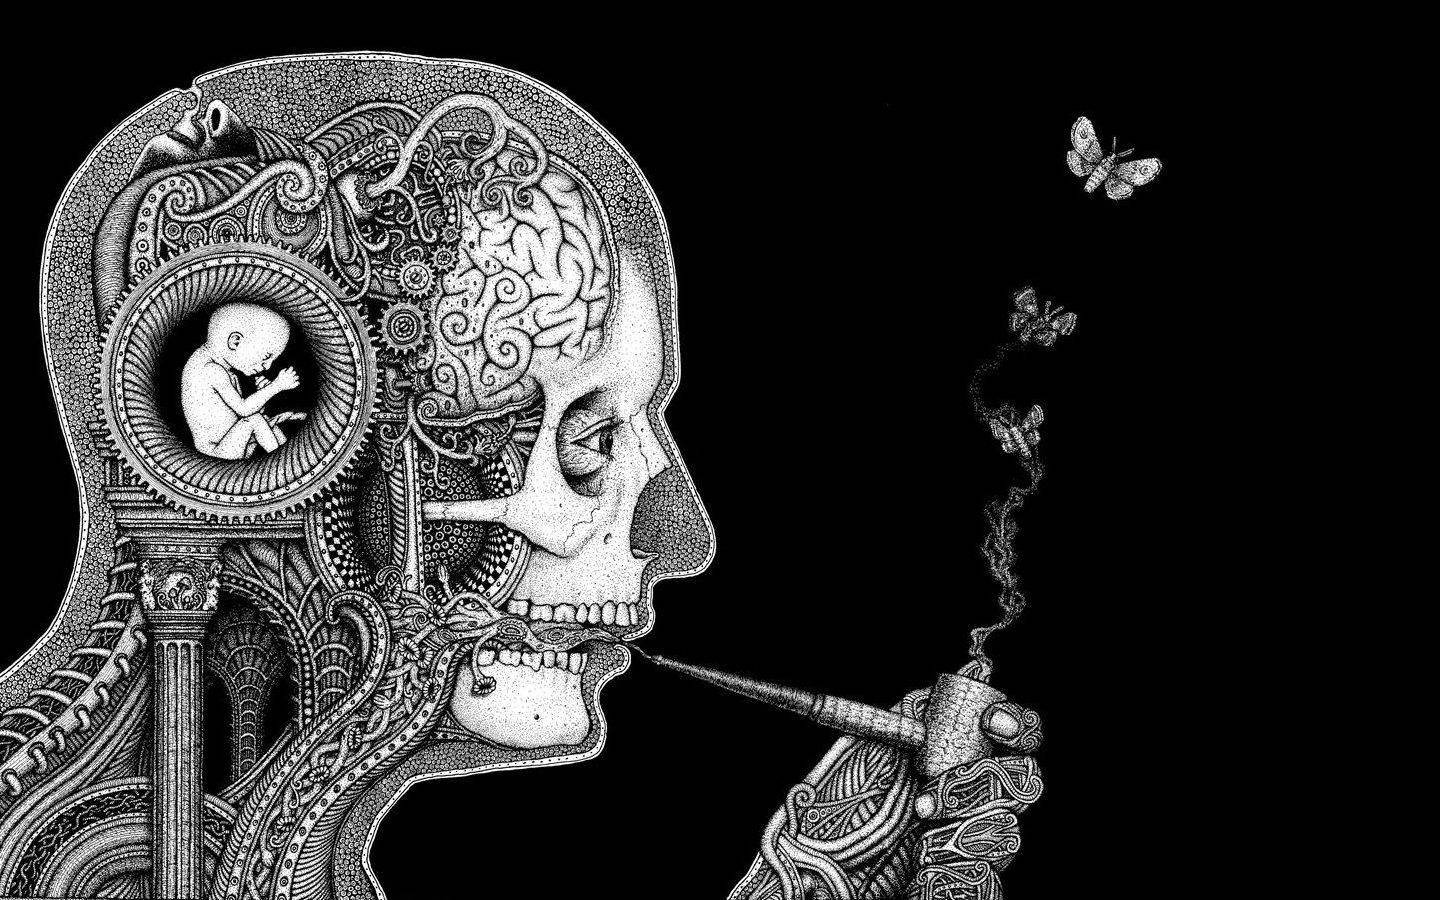 Umhomem Está Fumando Um Cigarro Em Um Desenho Preto E Branco. Papel de Parede